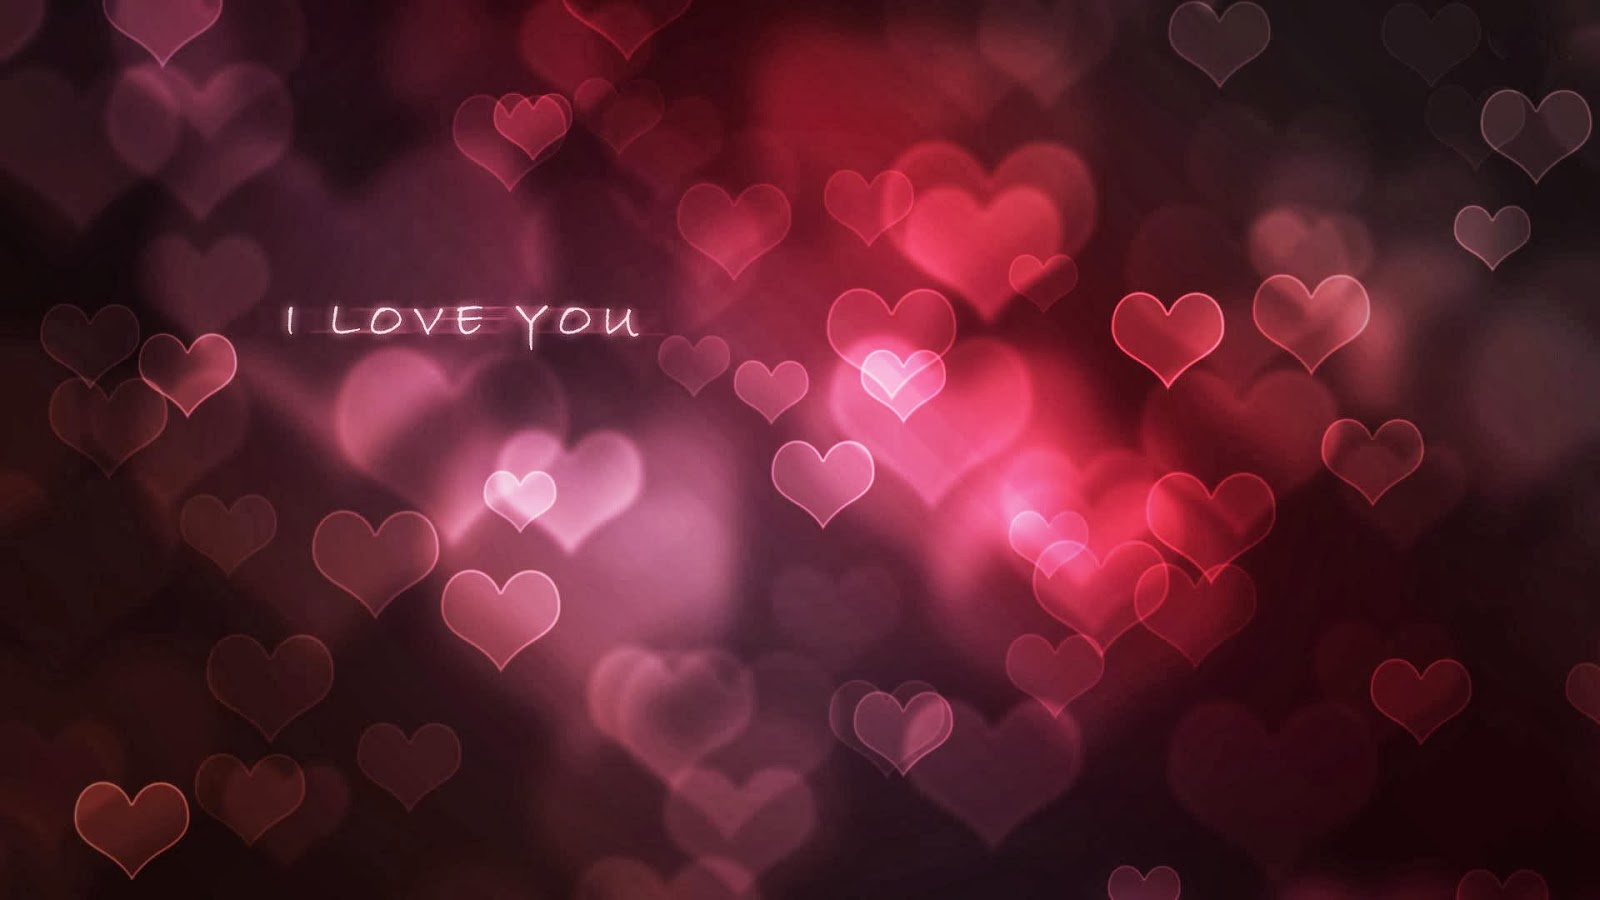 メッセージ付きの愛の壁紙,心臓,ピンク,赤,テキスト,バレンタイン・デー